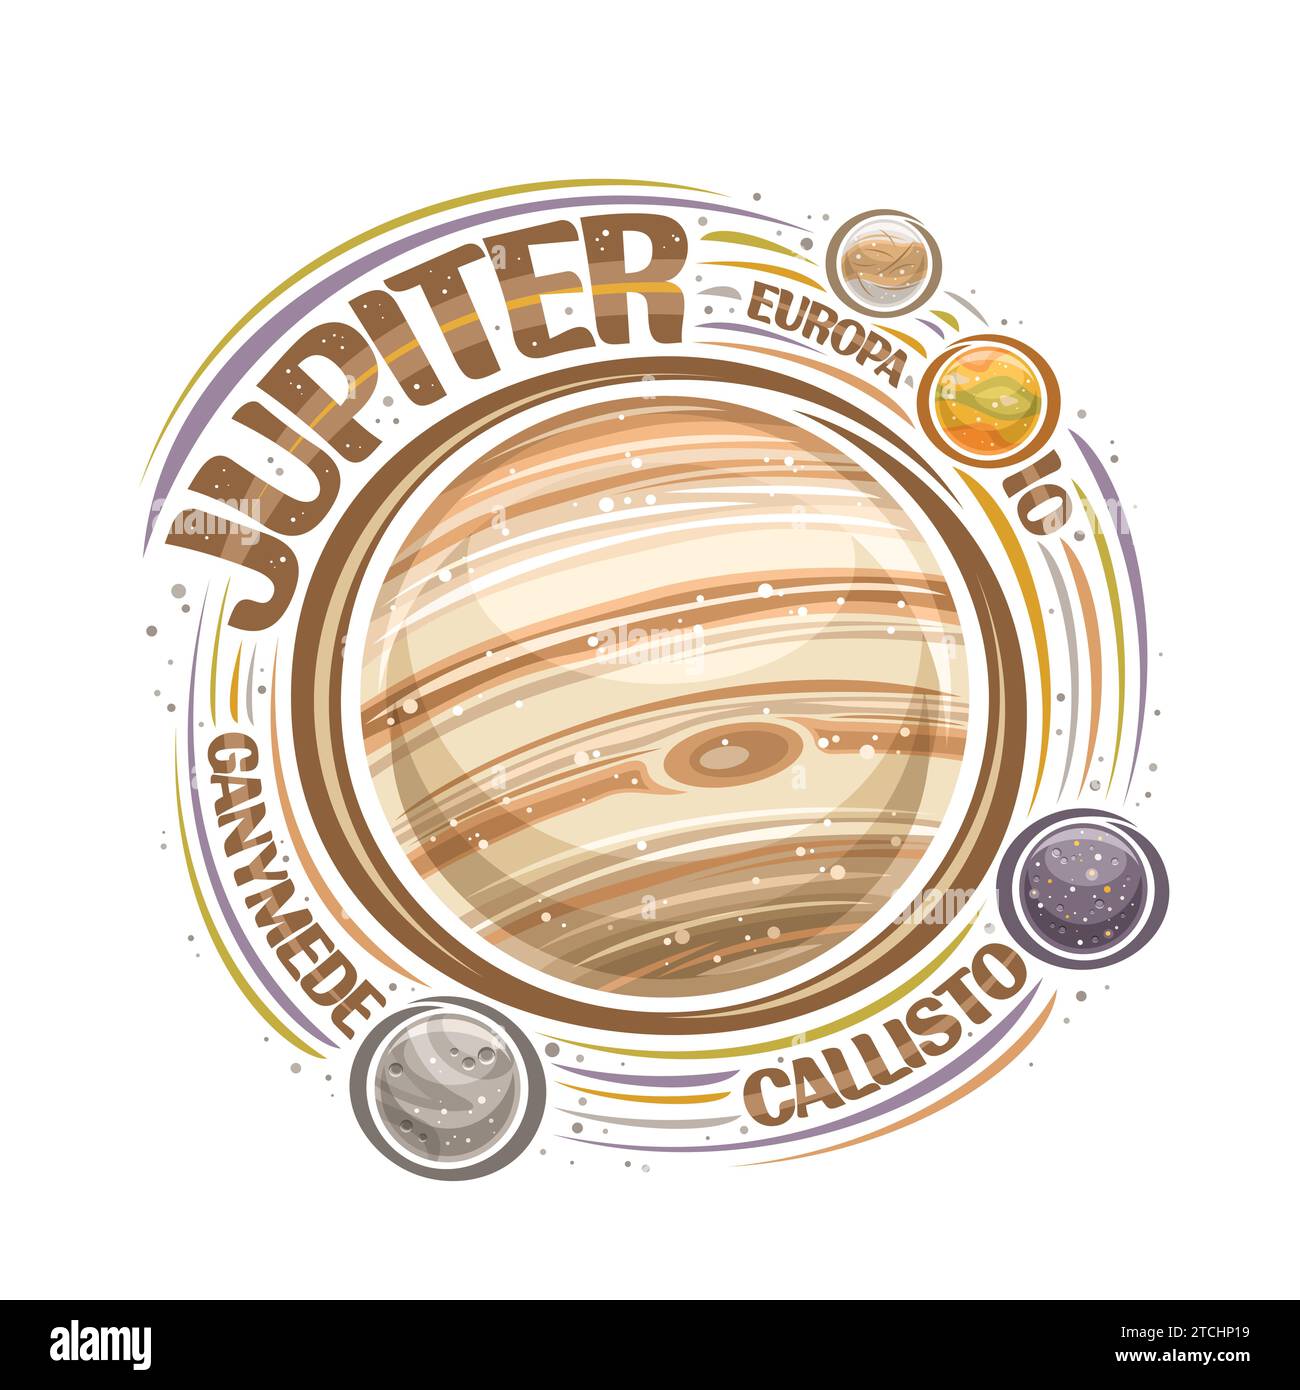 Logo vettoriale per Giove, stampa cosmica decorativa con pianeta rotante giove e lune, superficie gassosa con grande macchia rossa, badge cosmo con brus unico Illustrazione Vettoriale